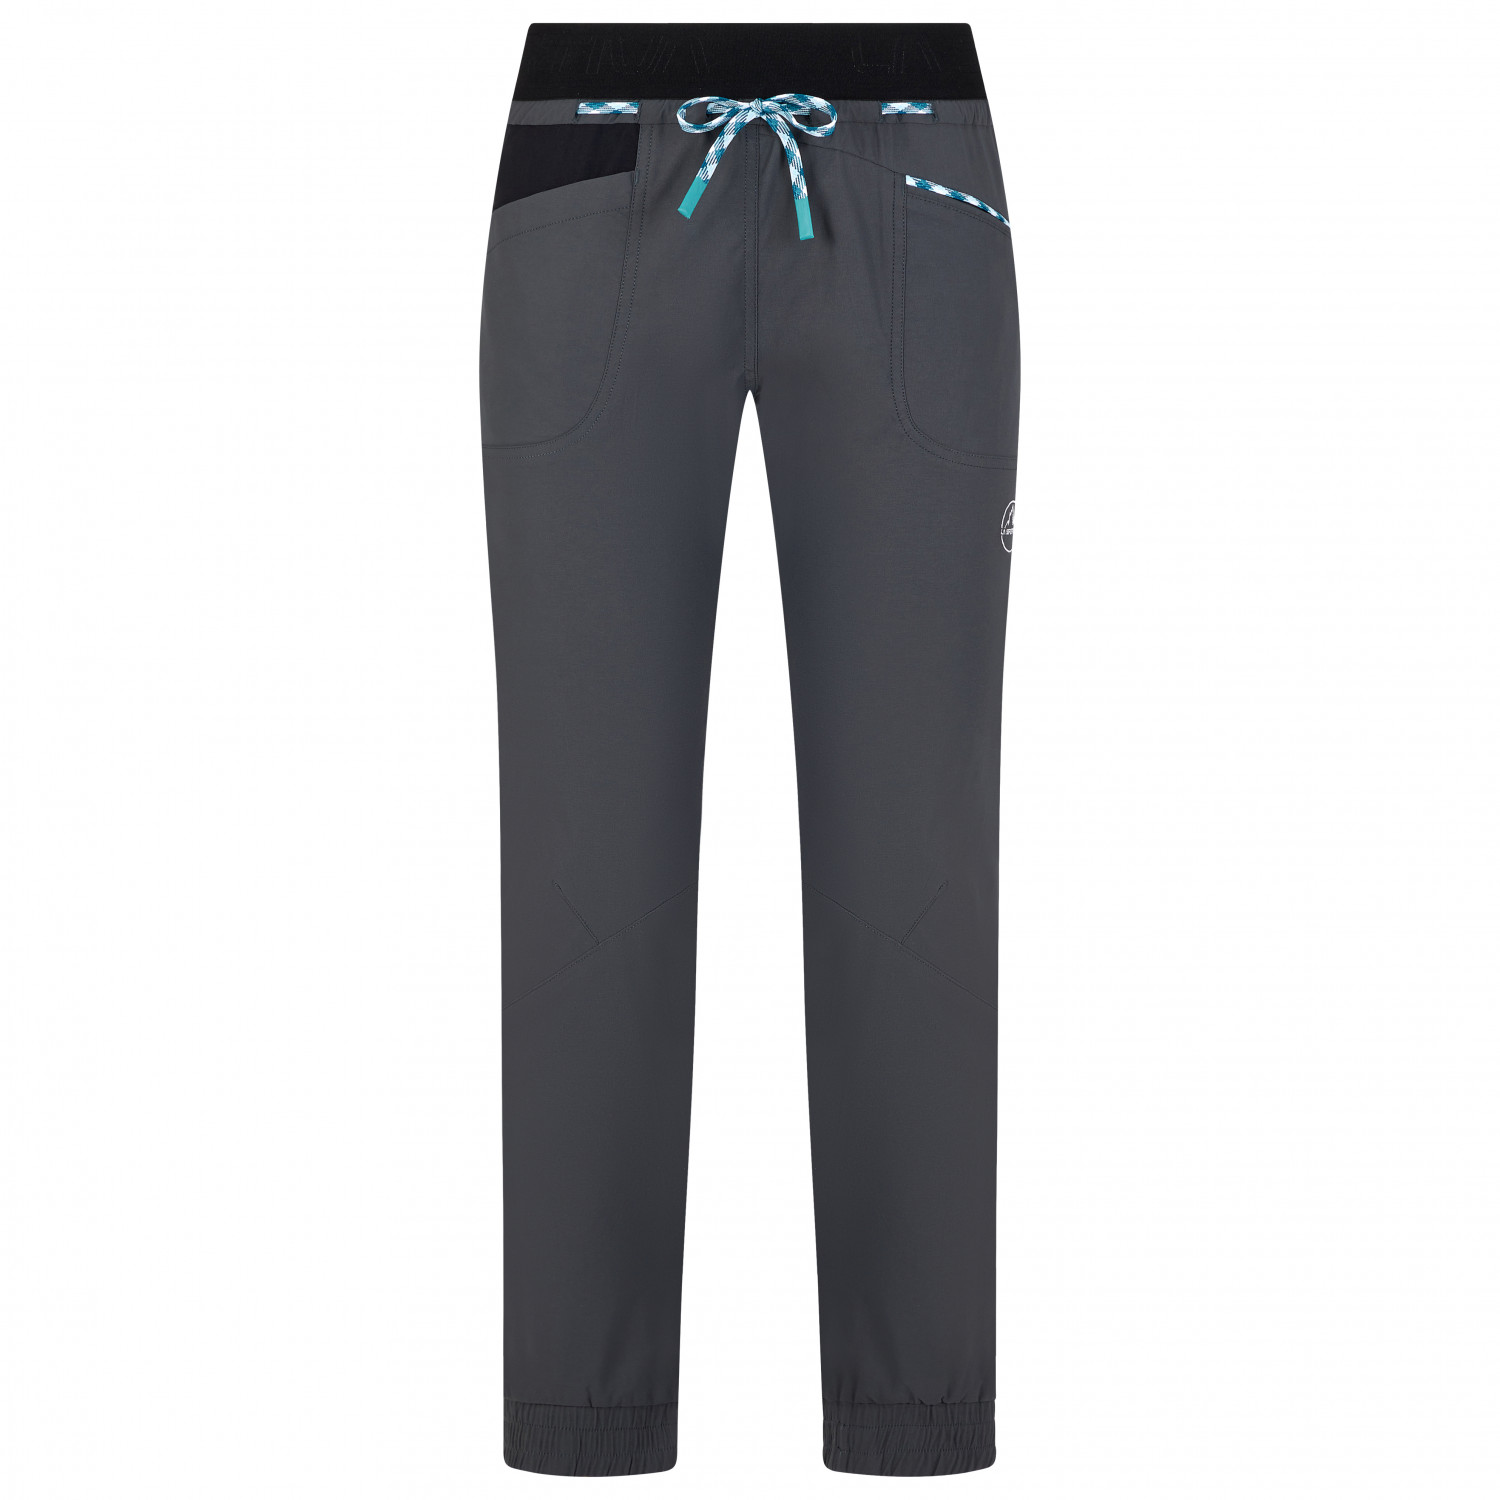 цена Альпинистские штаны La Sportiva Women's Mantra Pant, цвет Carbon